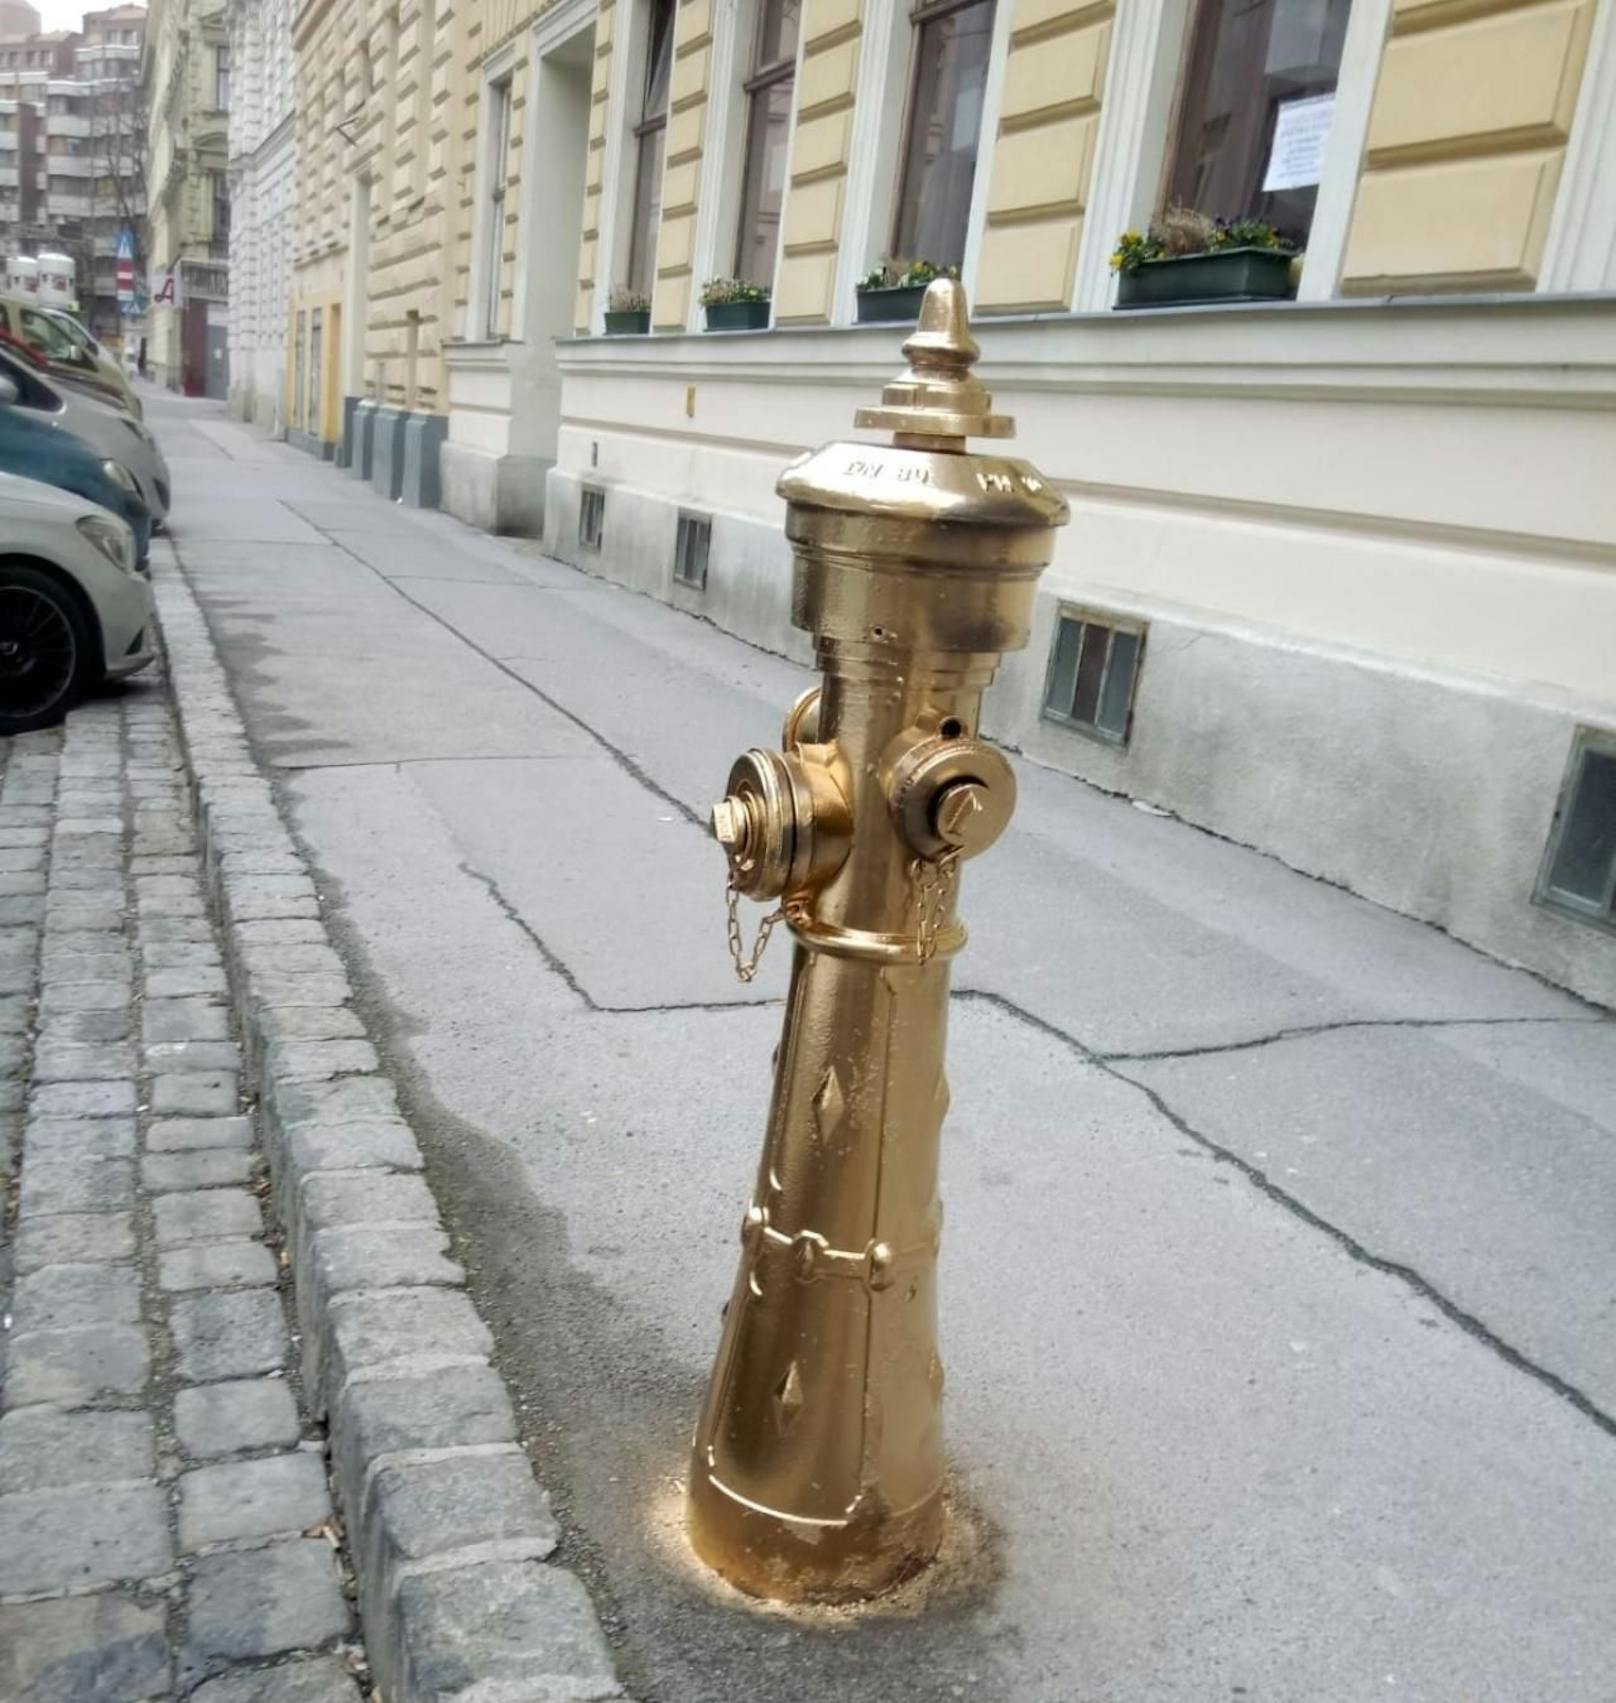 Nein, dieser Wasserspender funkelt nicht vor dem Trump-Tower, sondern in Wien-Alsergrund!